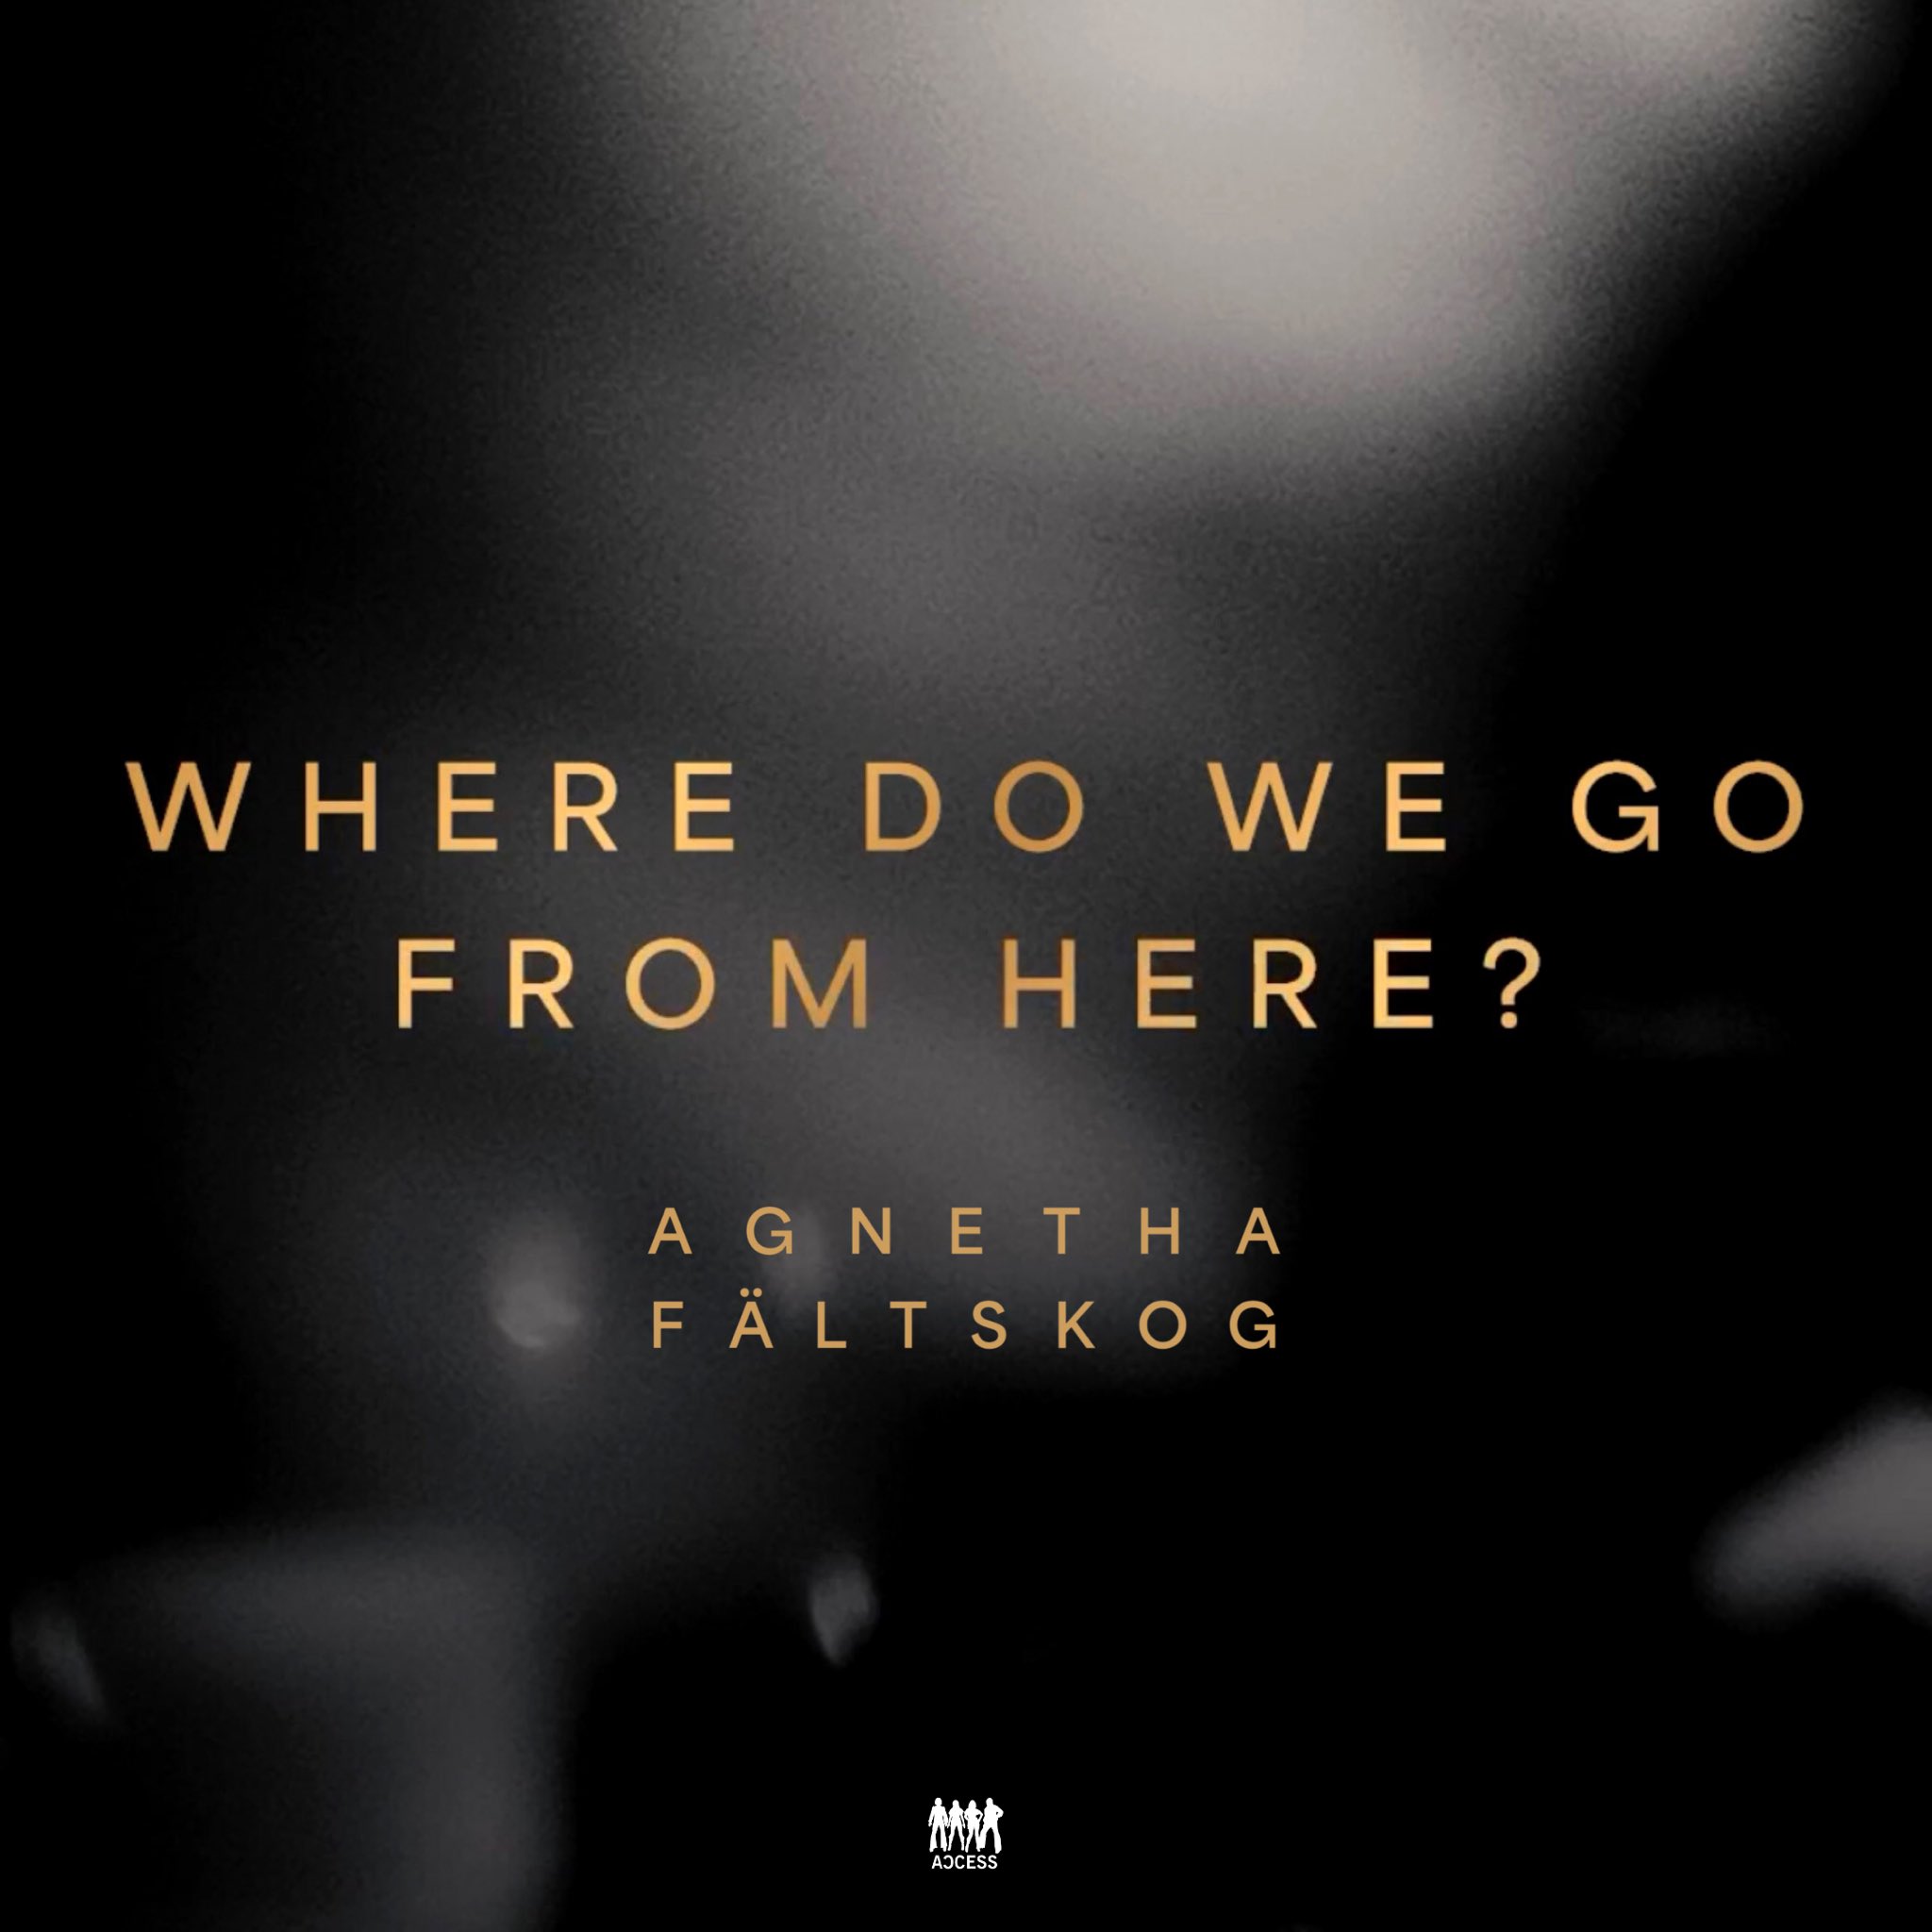 Eine einfach Frage von Agnetha Fältskog